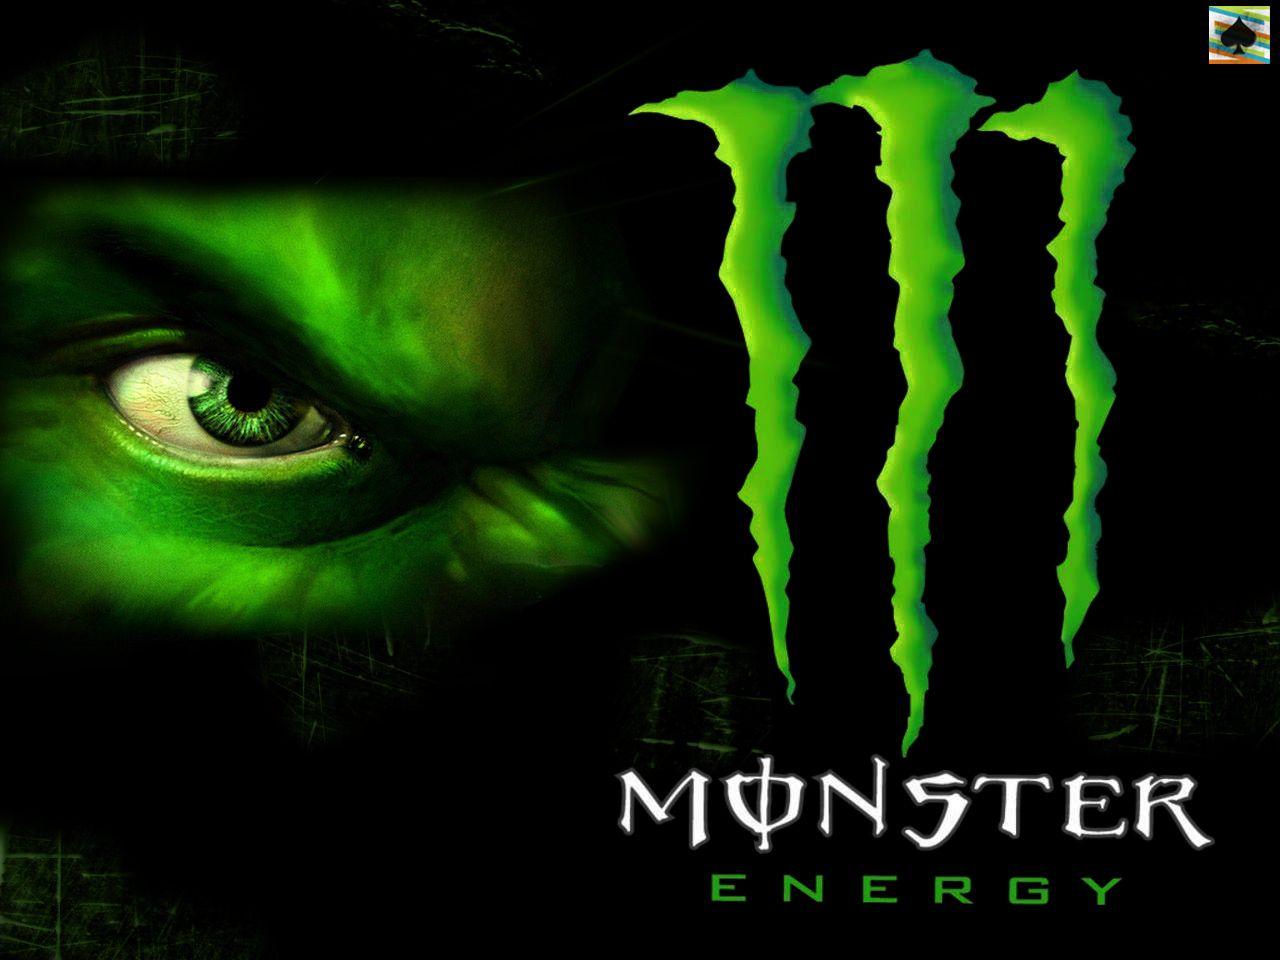 Image detail for -Dakota's Blog: Dc Monster Energy Wallpaper HD